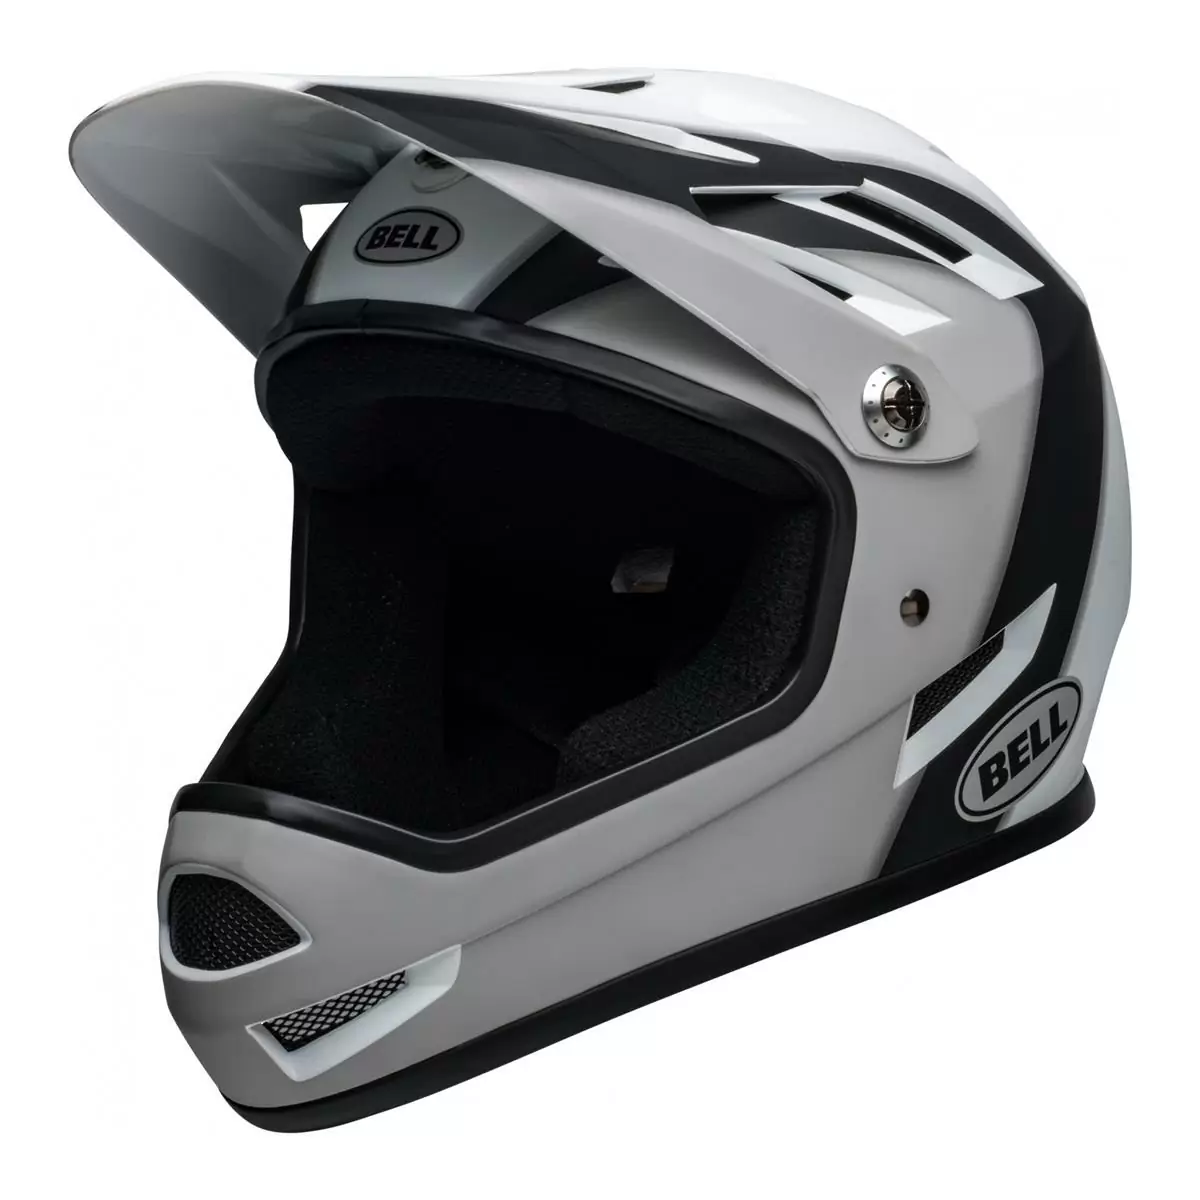 Sanction Full Face Helmet Black/White Size XS (48-51cm) - image